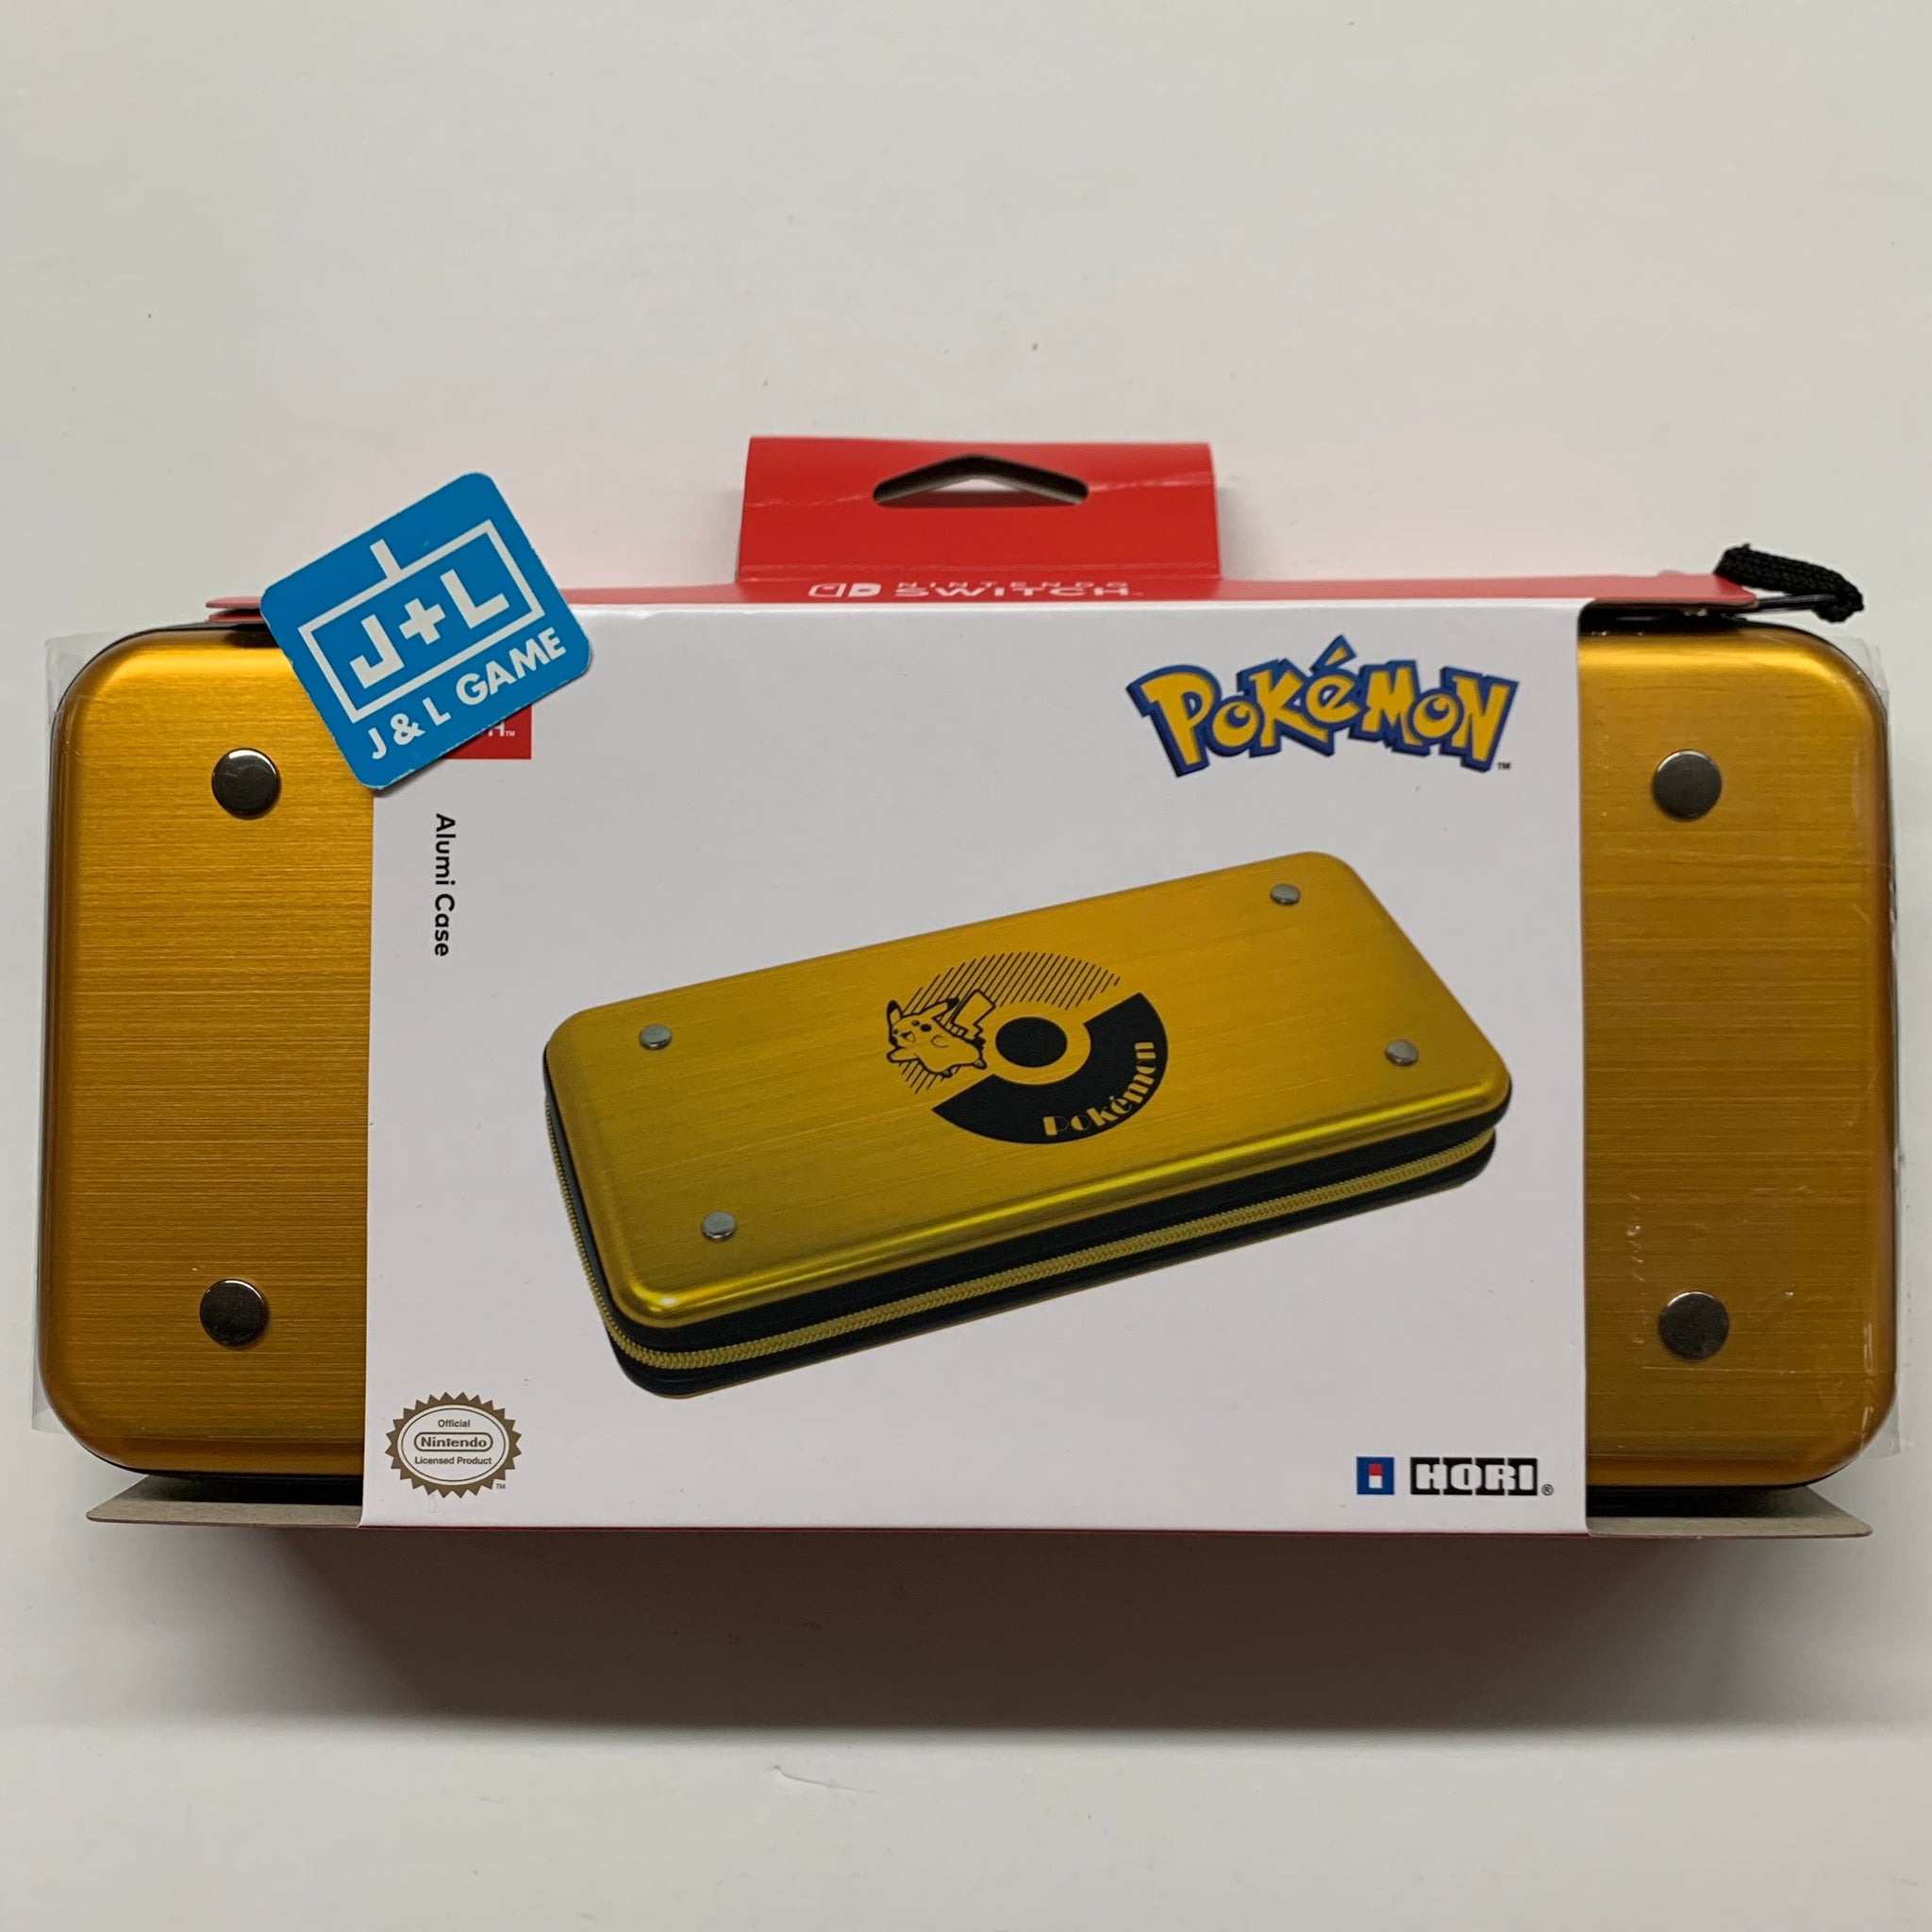 Pokémon Pikachu x HORI Nintendo Switch Accessories